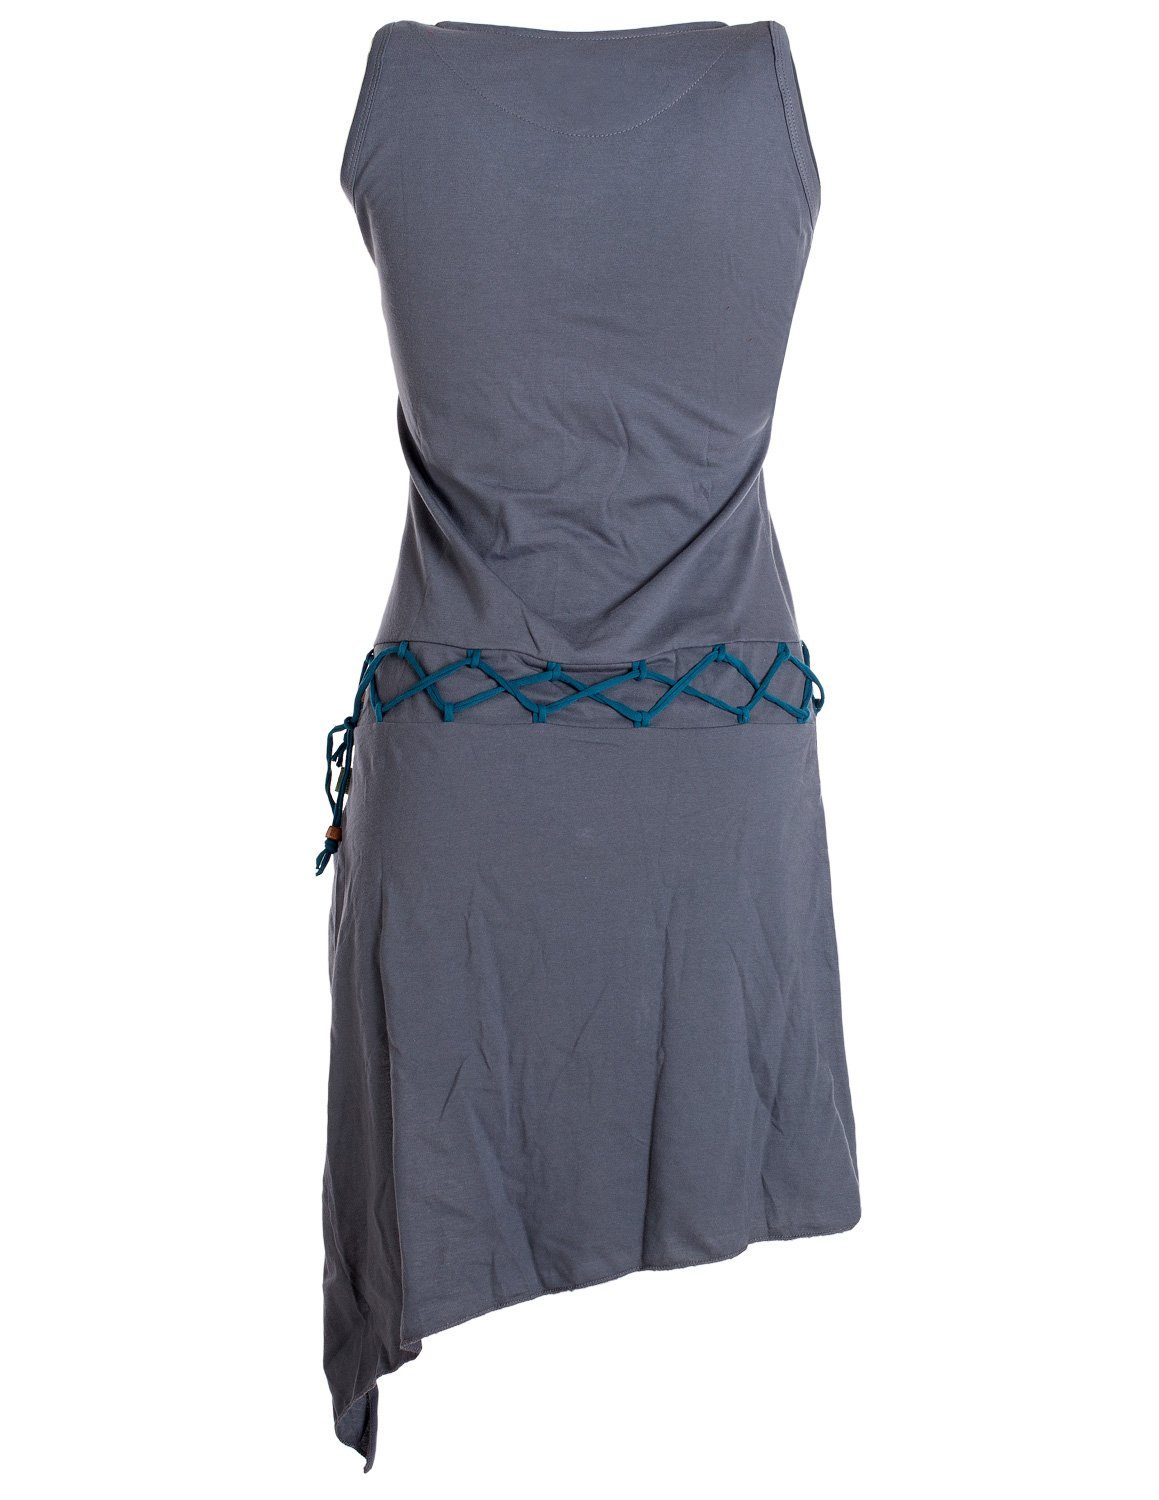 Vishes Sommerkleid Ärmelloses Kleid Boho, grau Elfen Gürtel-Schnürung Style Beinausschnitt Goa Hippie, asymmetrisch